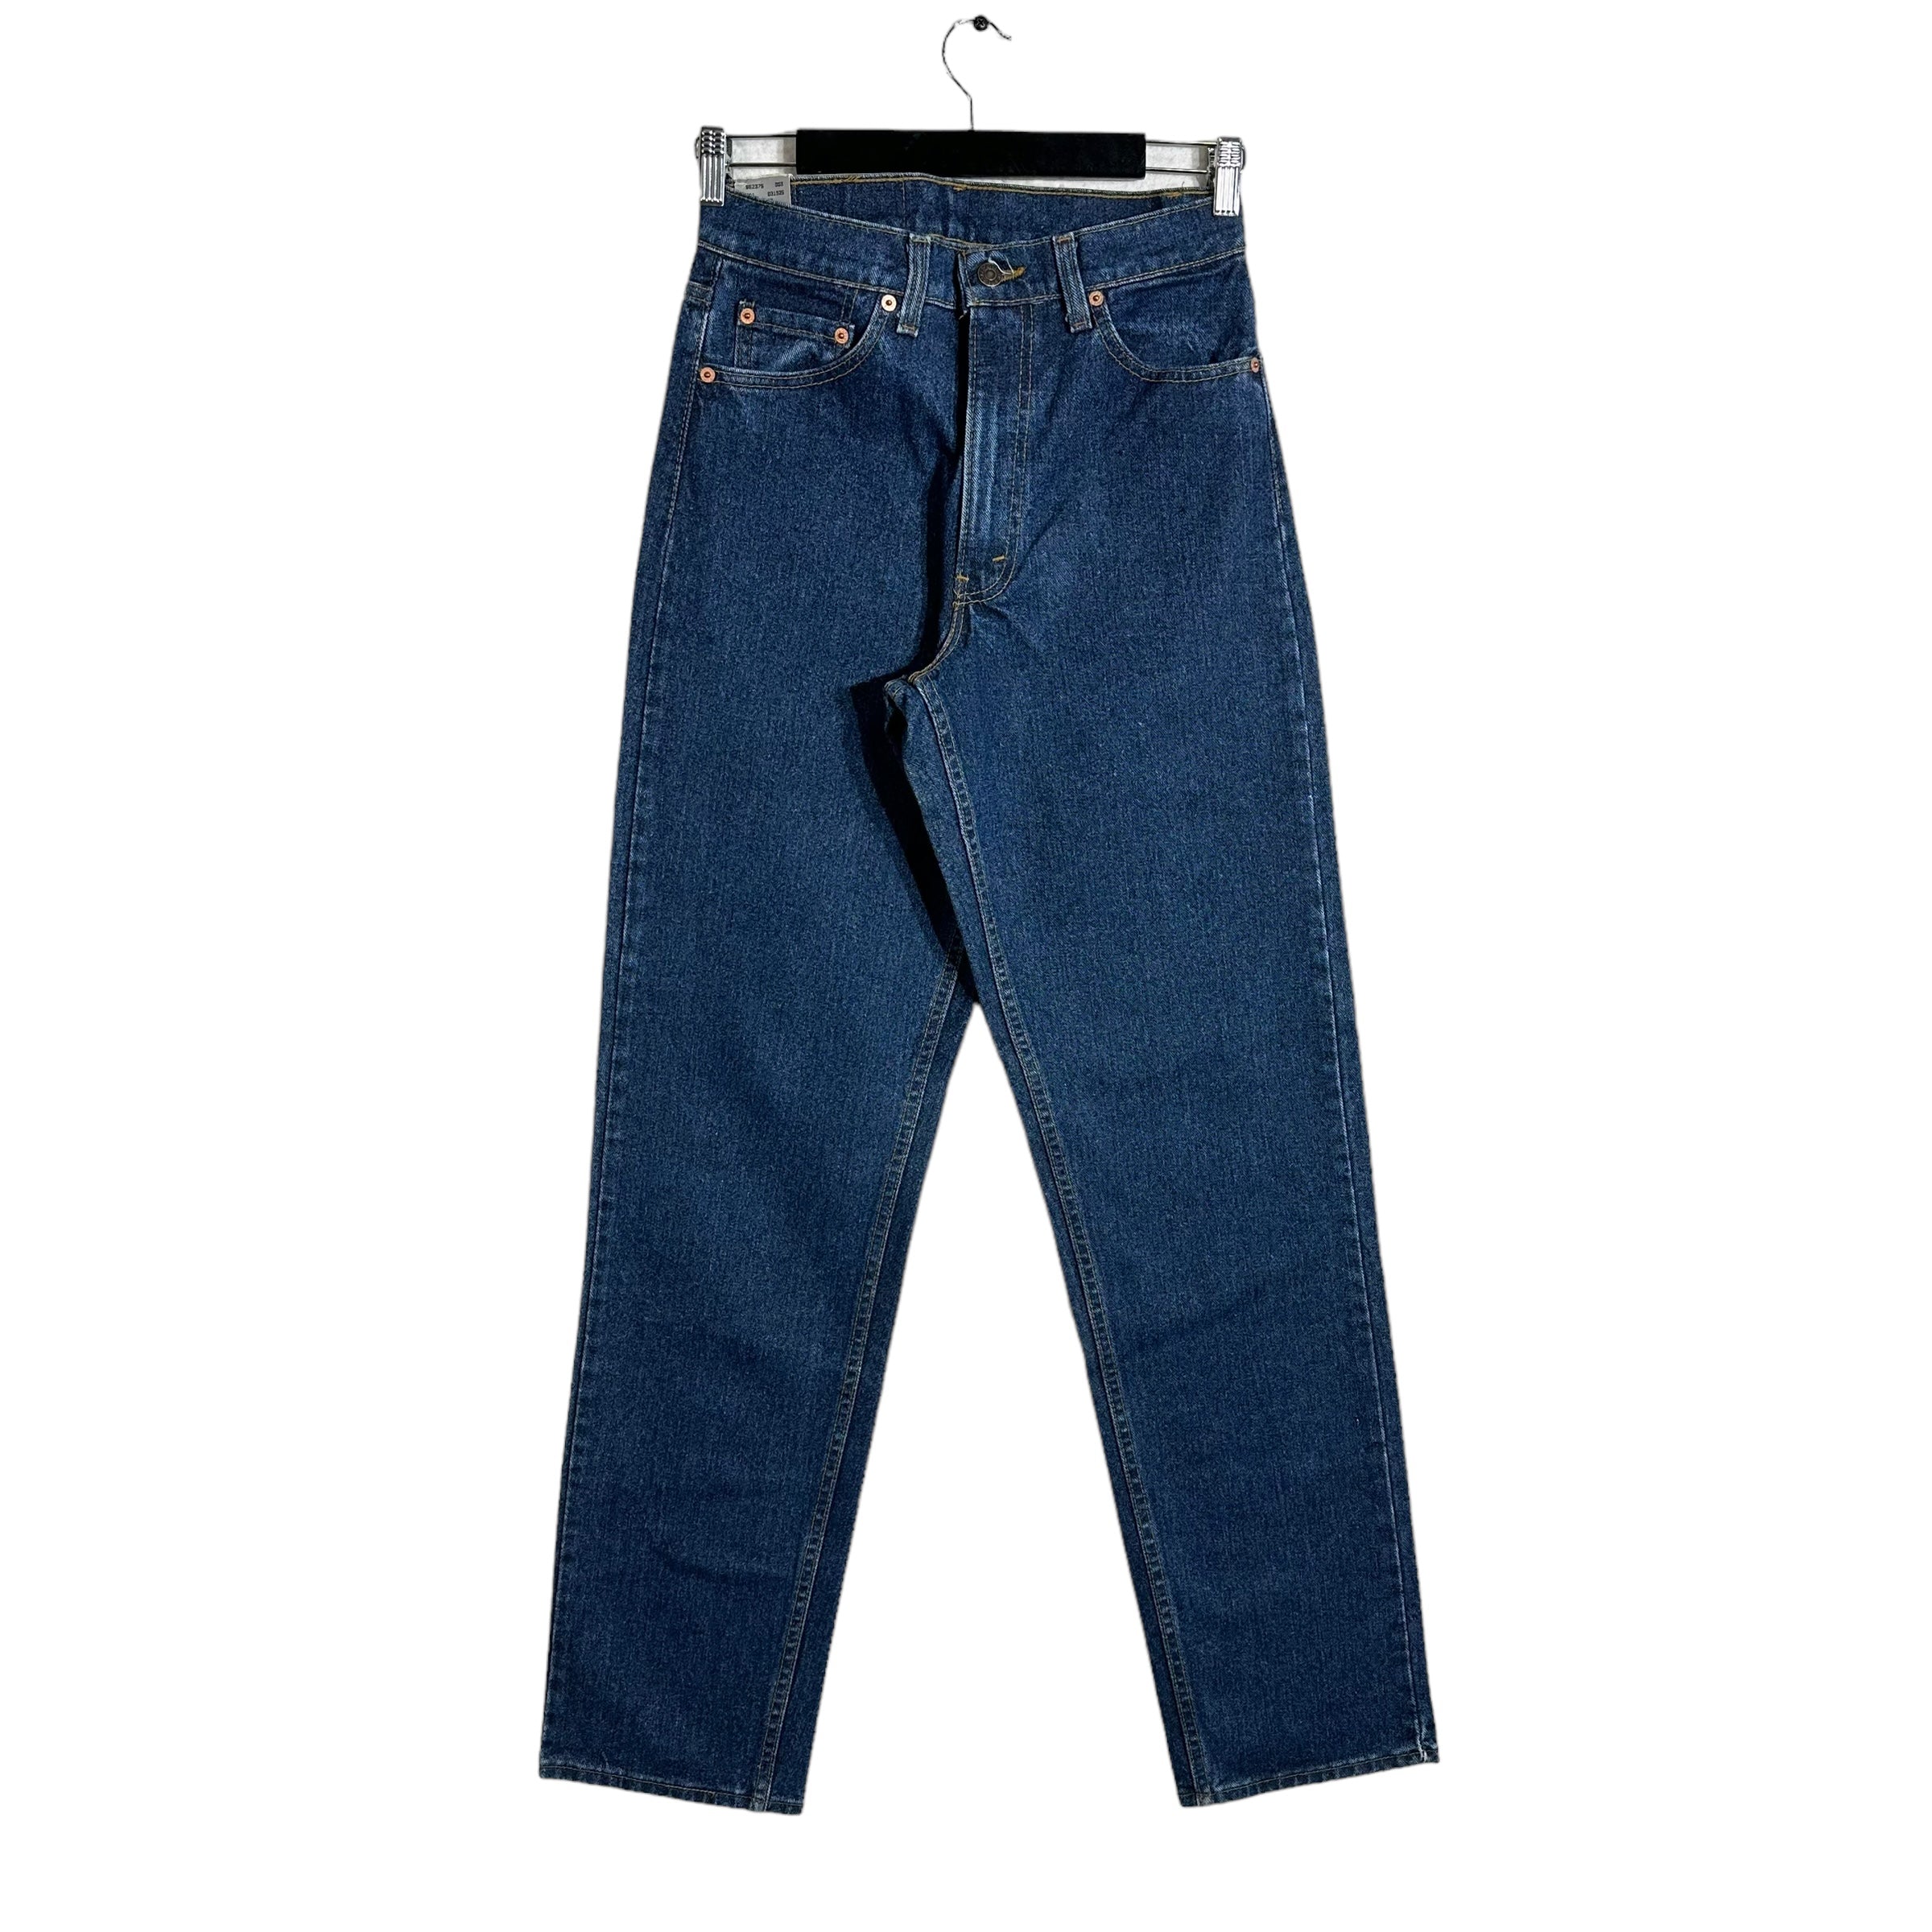 Vintage NWT Levi's Denim Jeans